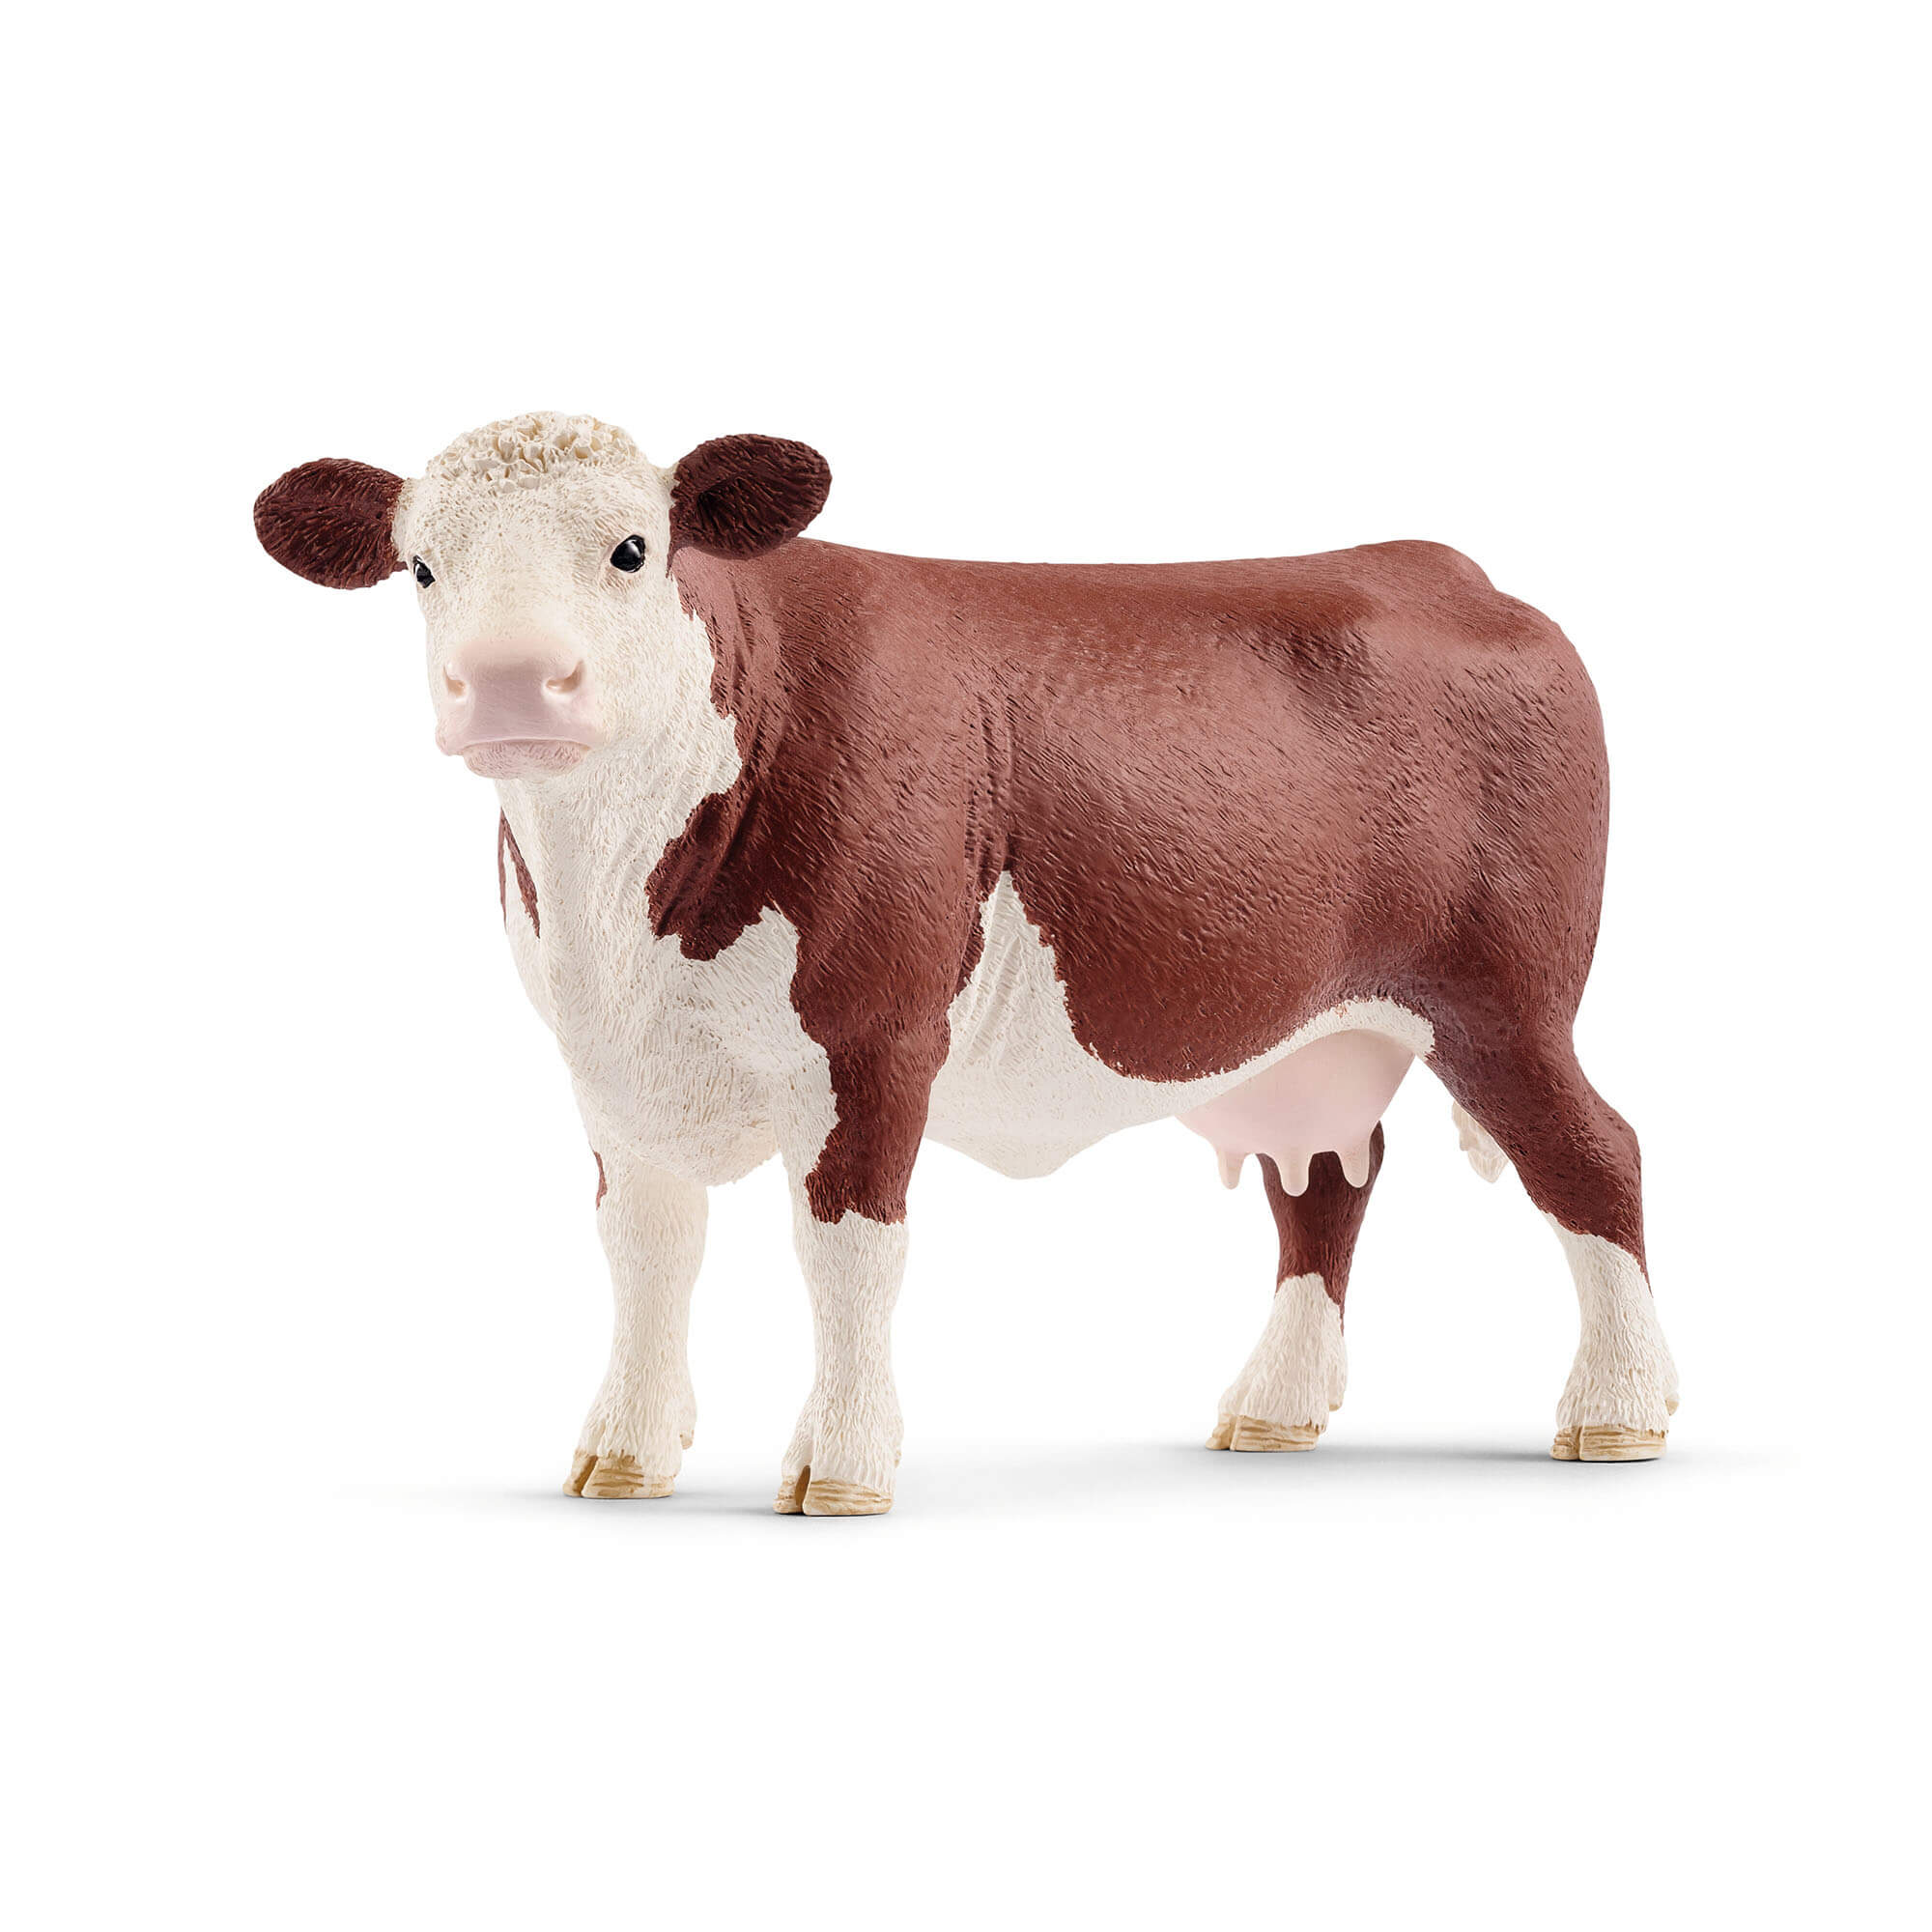 Schleich Farm World Hereford Cow Animal Figure